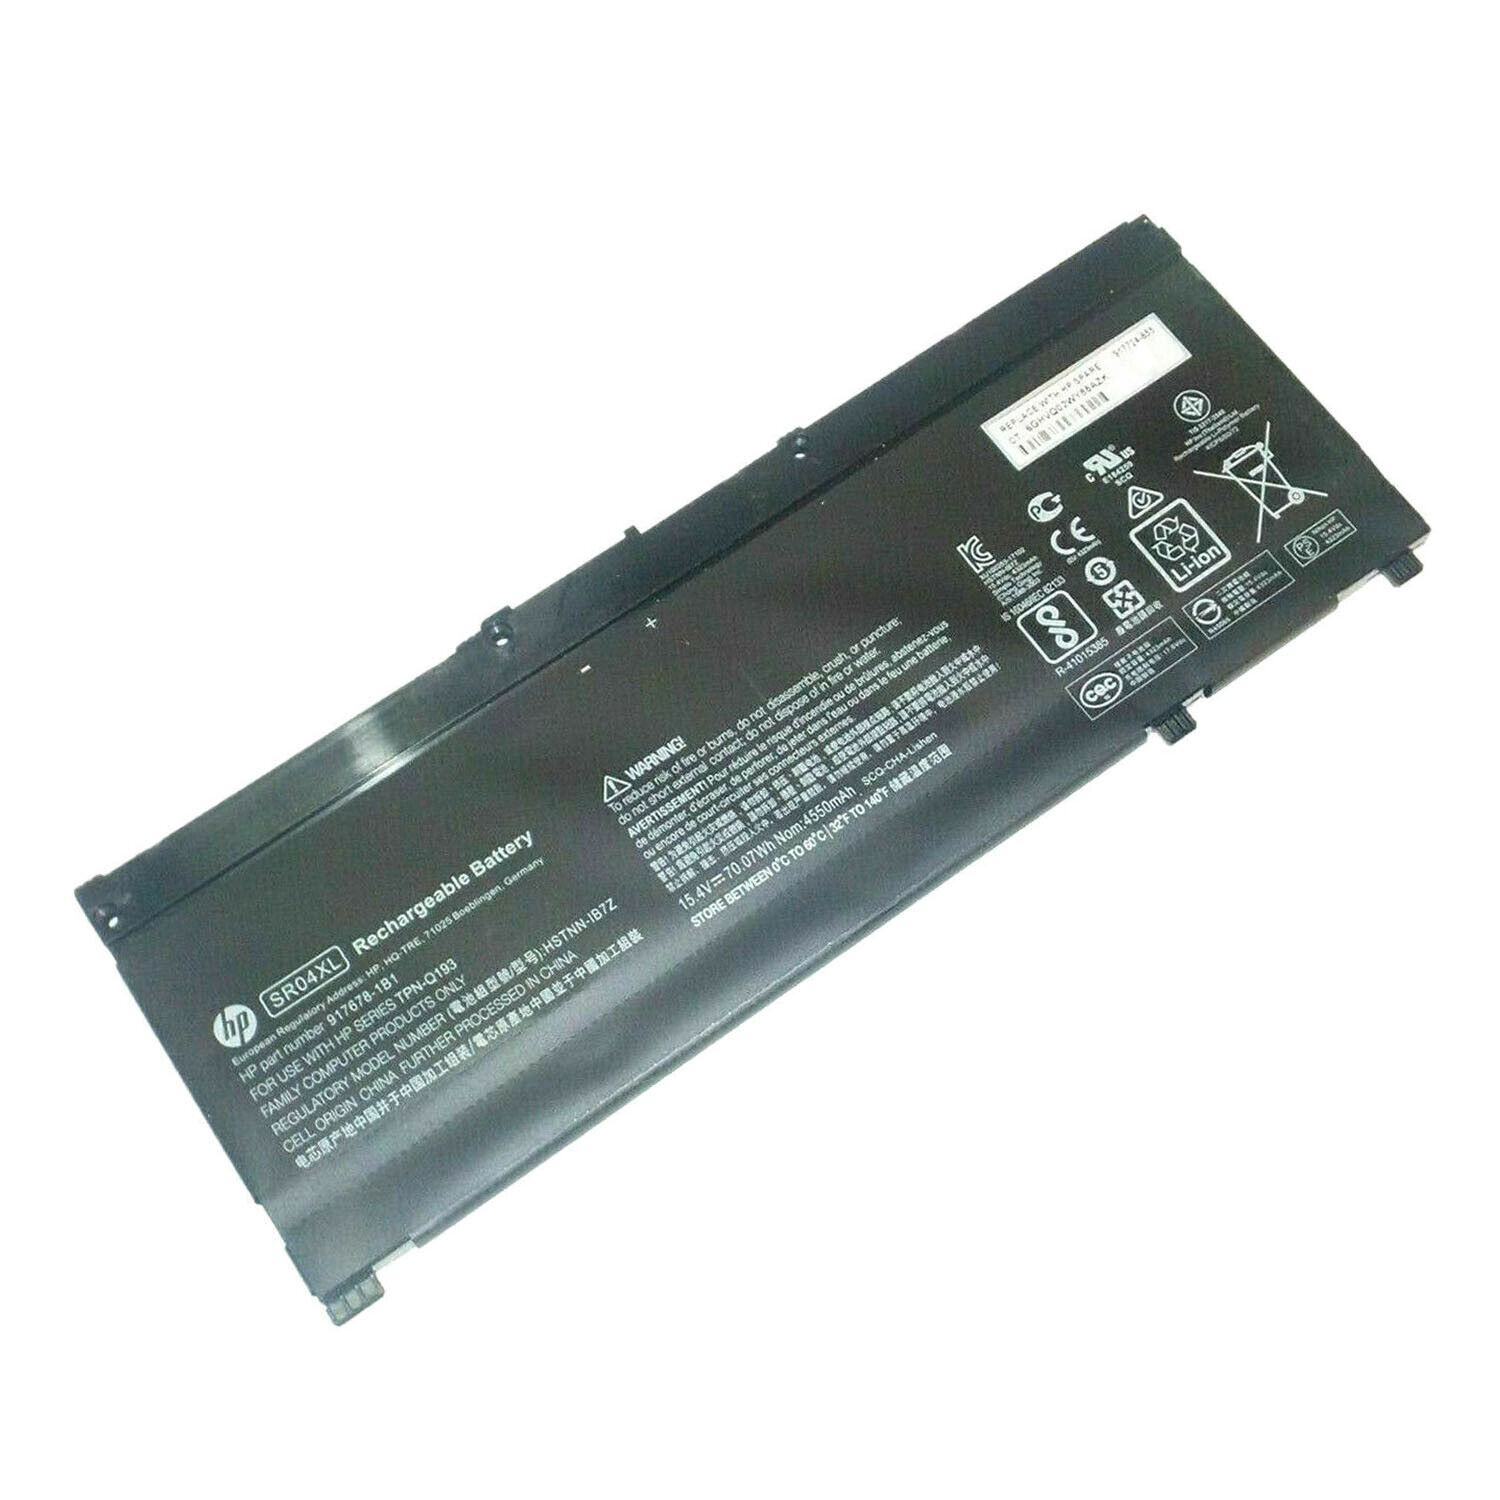 Genuine SR04XL battery for HP Omen 15 2018 15-dc0xxx 15-dc0000 15-dc1xxx 3KS71PA